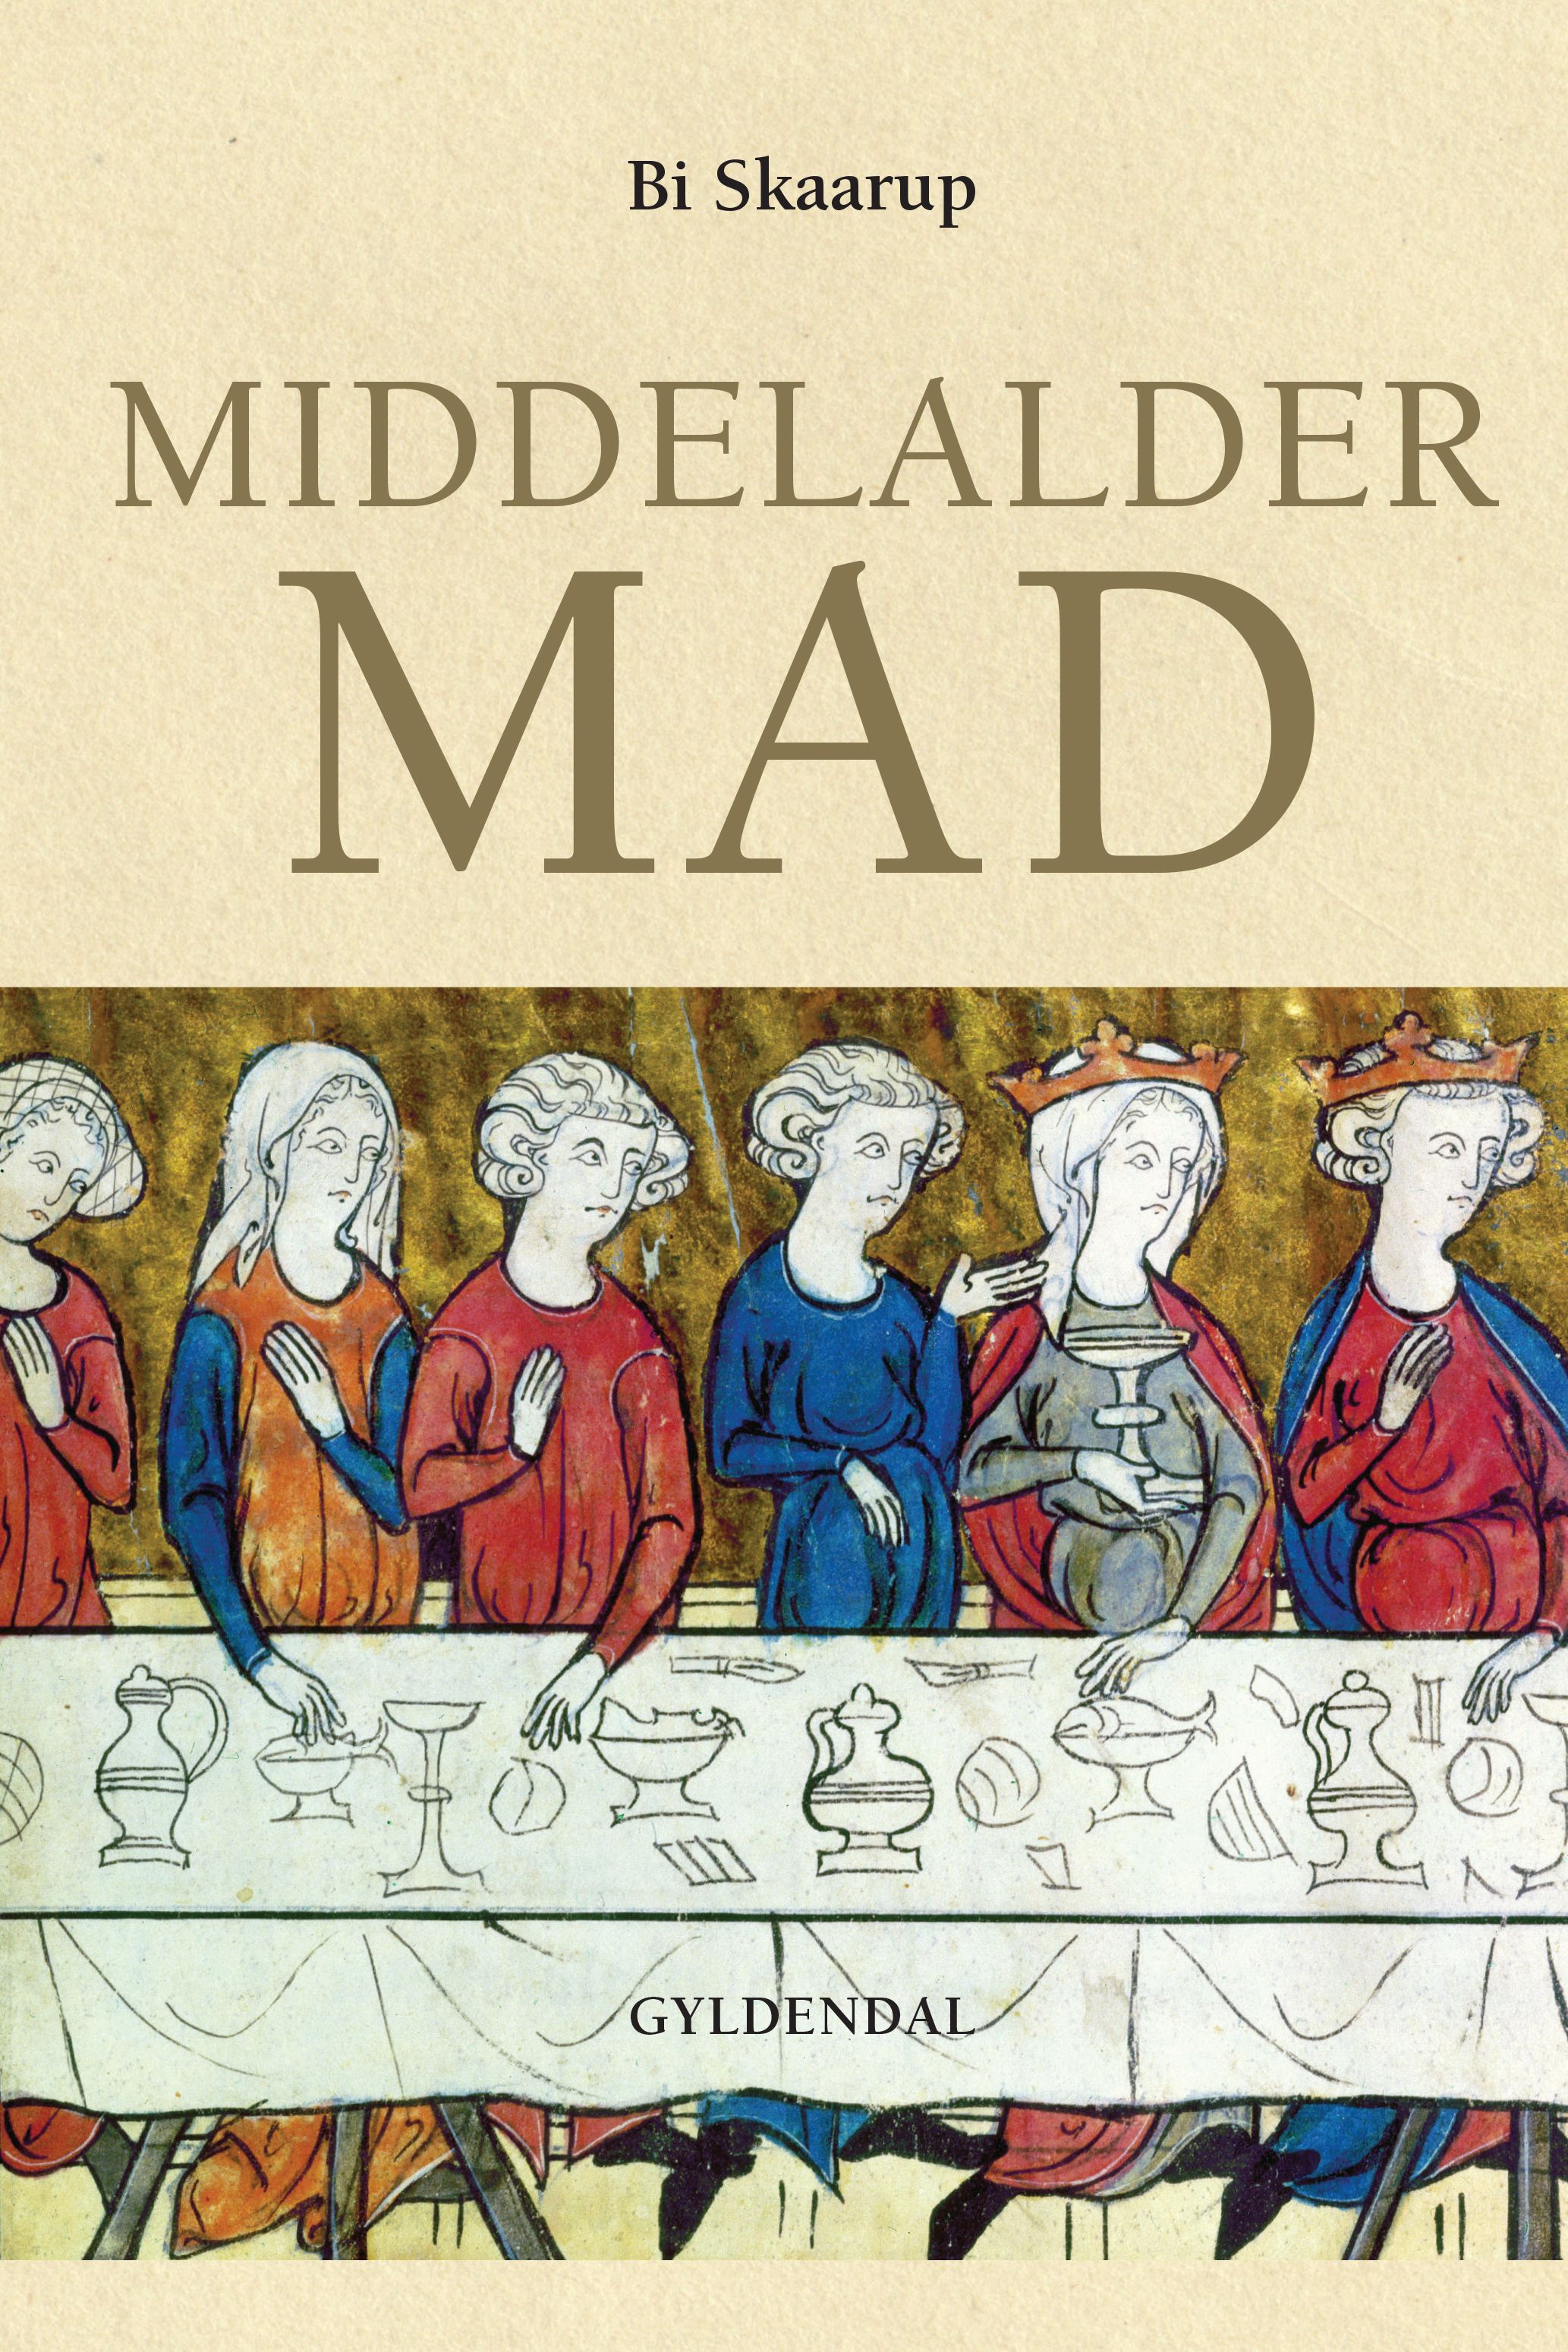 Middelaldermad, e-bog af Bi Skaarup